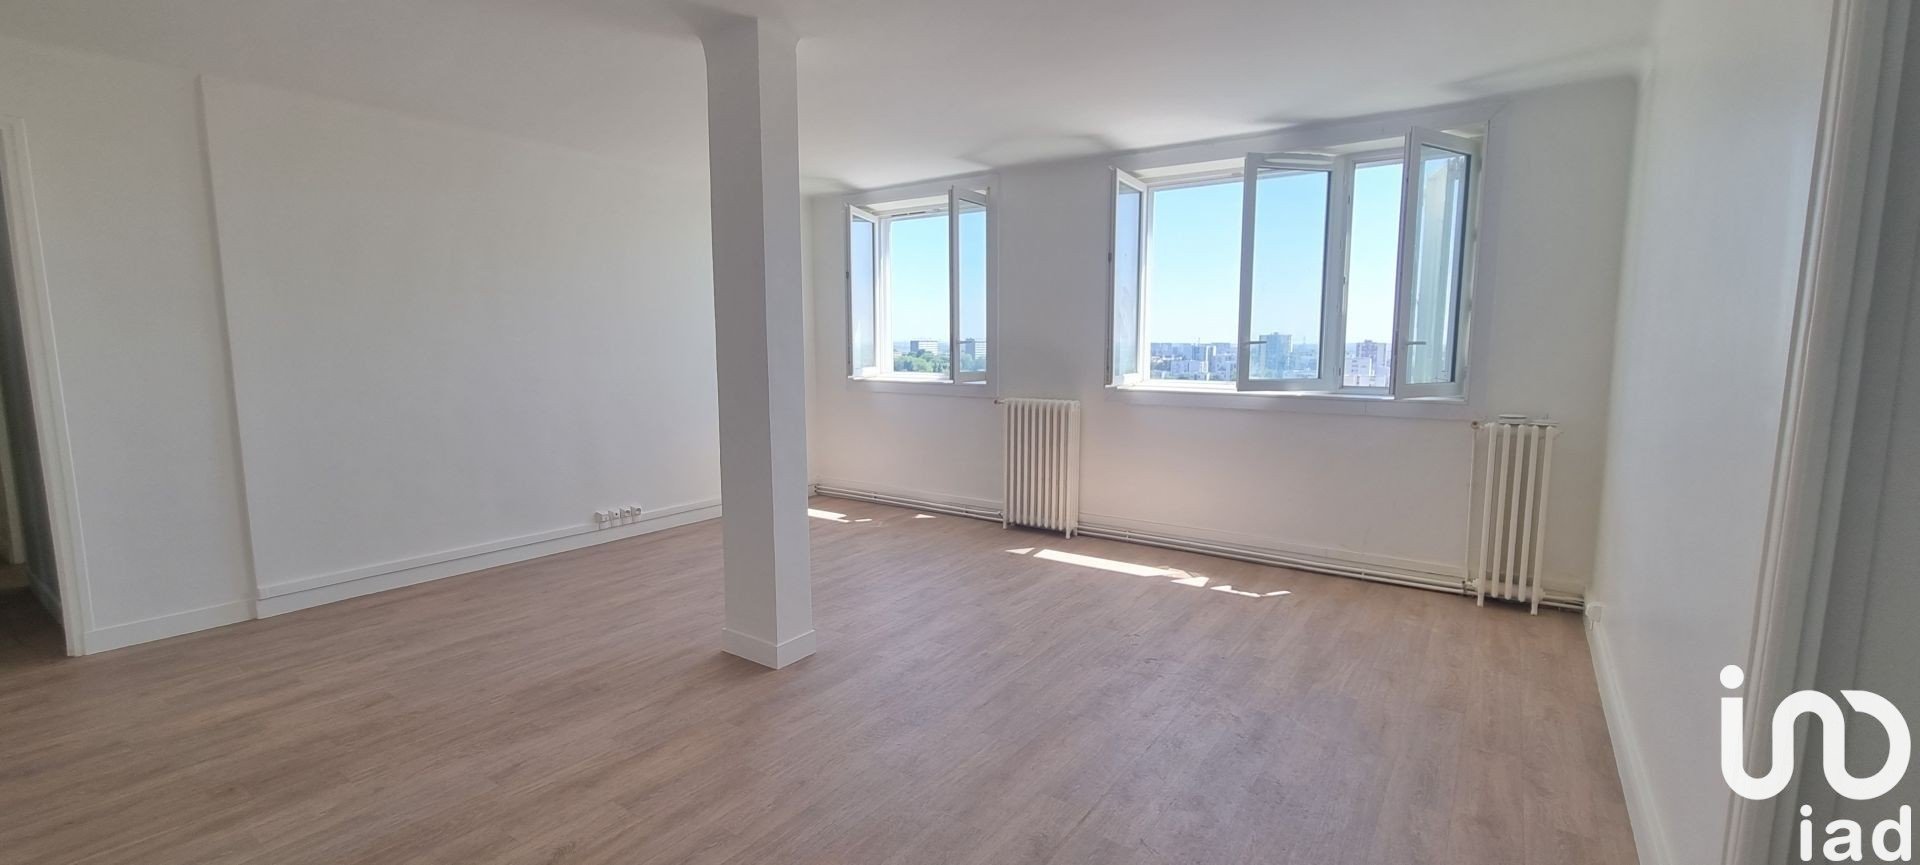 Appartement 5 pièce(s) 90 m²à vendre Villiers-le-bel